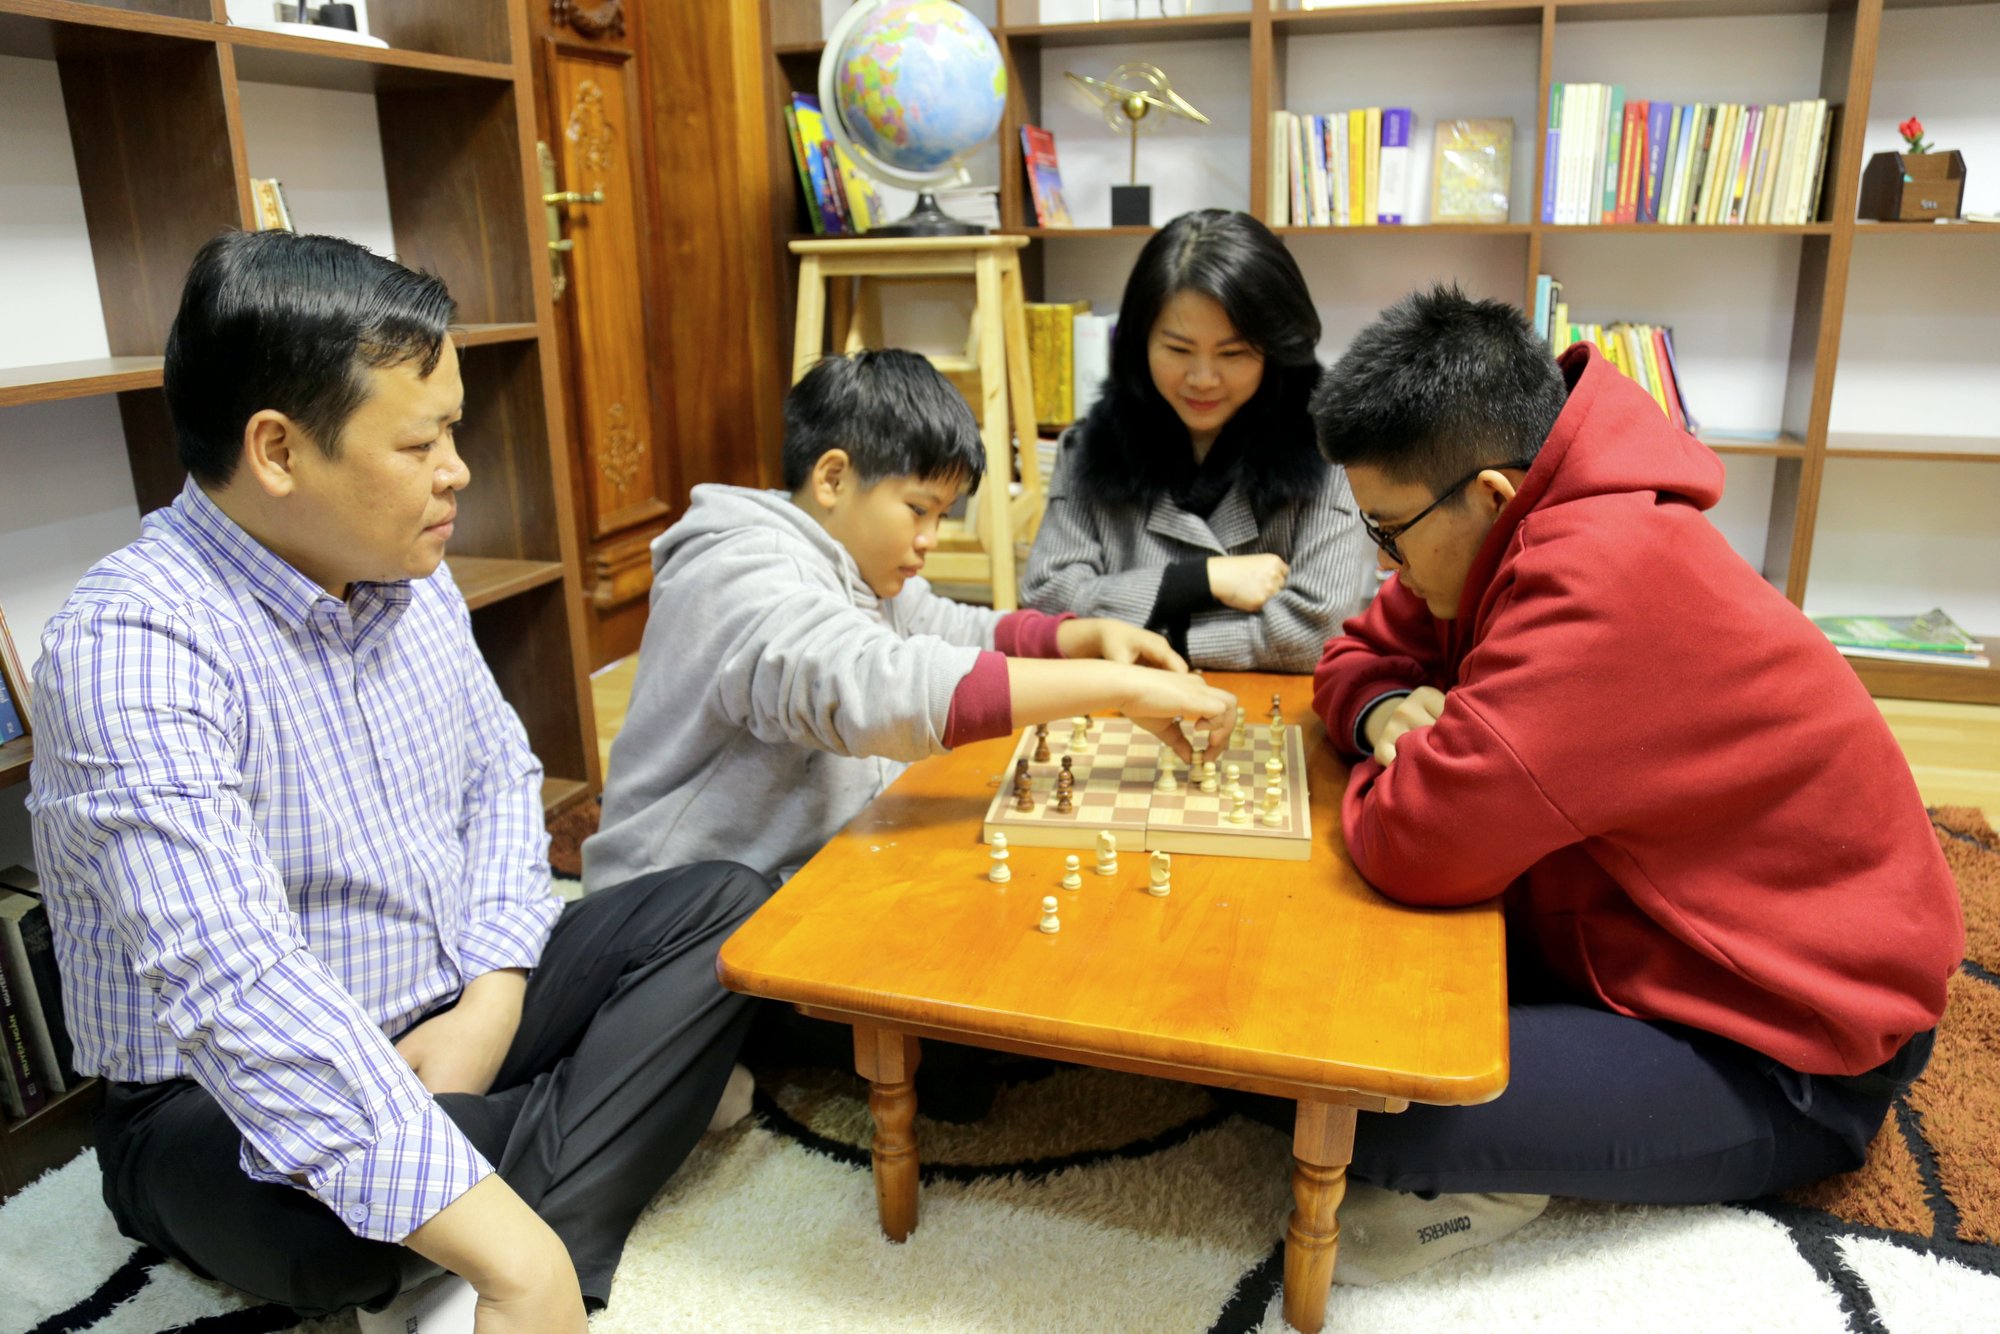 Ngoài giờ học và đọc sách, Khánh thường xuyên rủ bố mẹ, em trai chơi cờ vua. Cậu học trò lớp 11 này cũng rất đa tài khi biết đánh đàn ghi-ta và chơi bóng rổ khá 